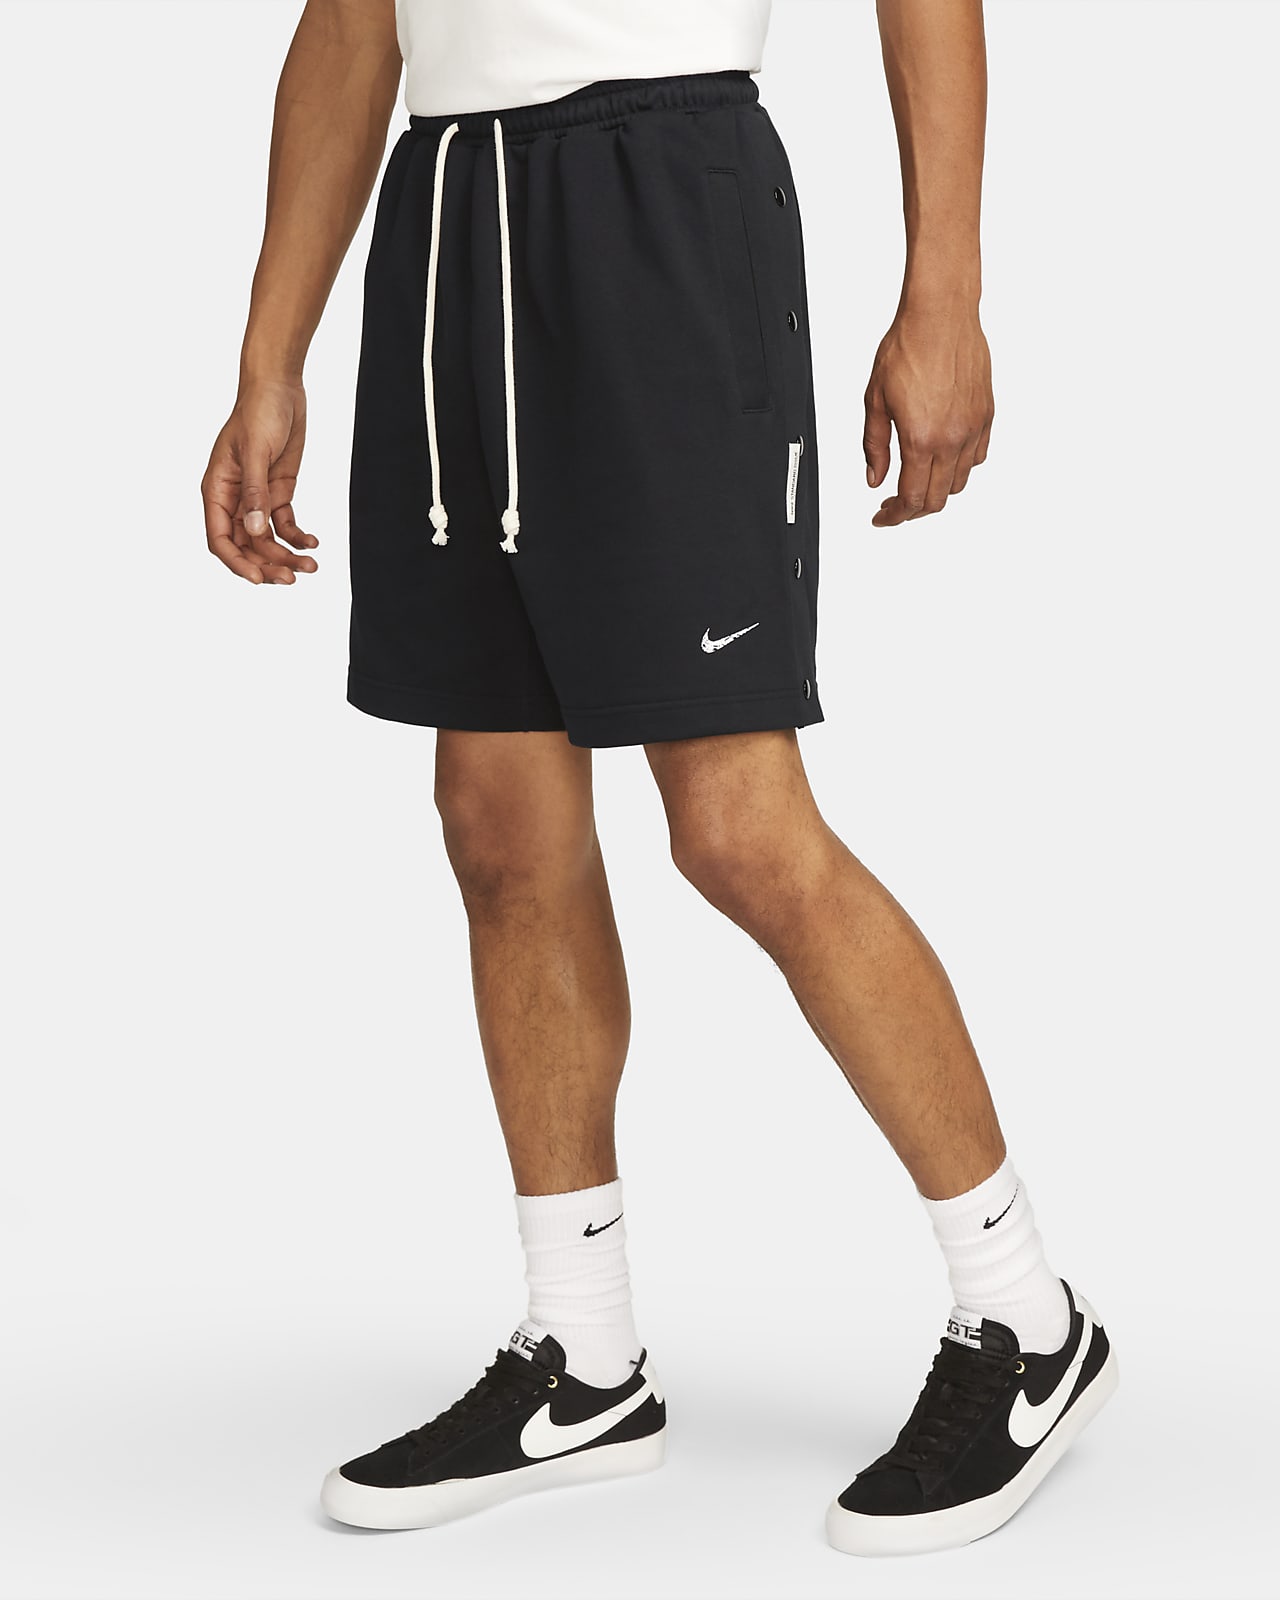 Nike Dri-FIT Standard Issue Men's 8